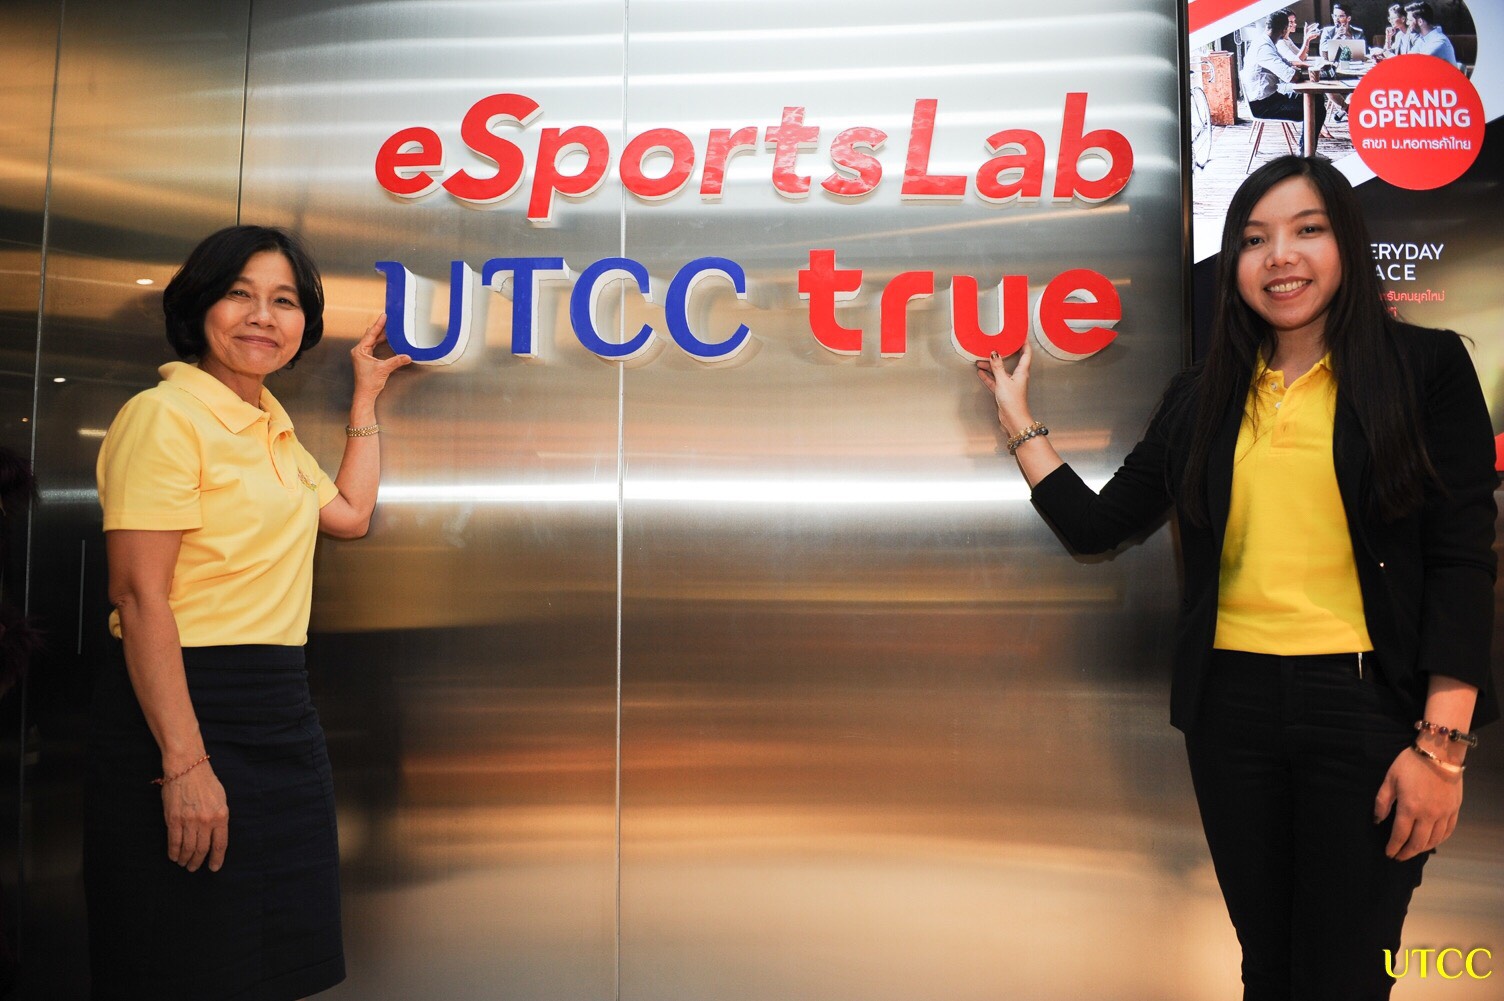 ม.หอการค้าไทย จับมือ ทรู คอร์ปอเรชั่น เปิดตัวห้องแลปอีสปอร์ตครั้งแรกในไทย หวังสร้างนักธุรกิจเกมชิงส่วนแบ่งตลาดโลก